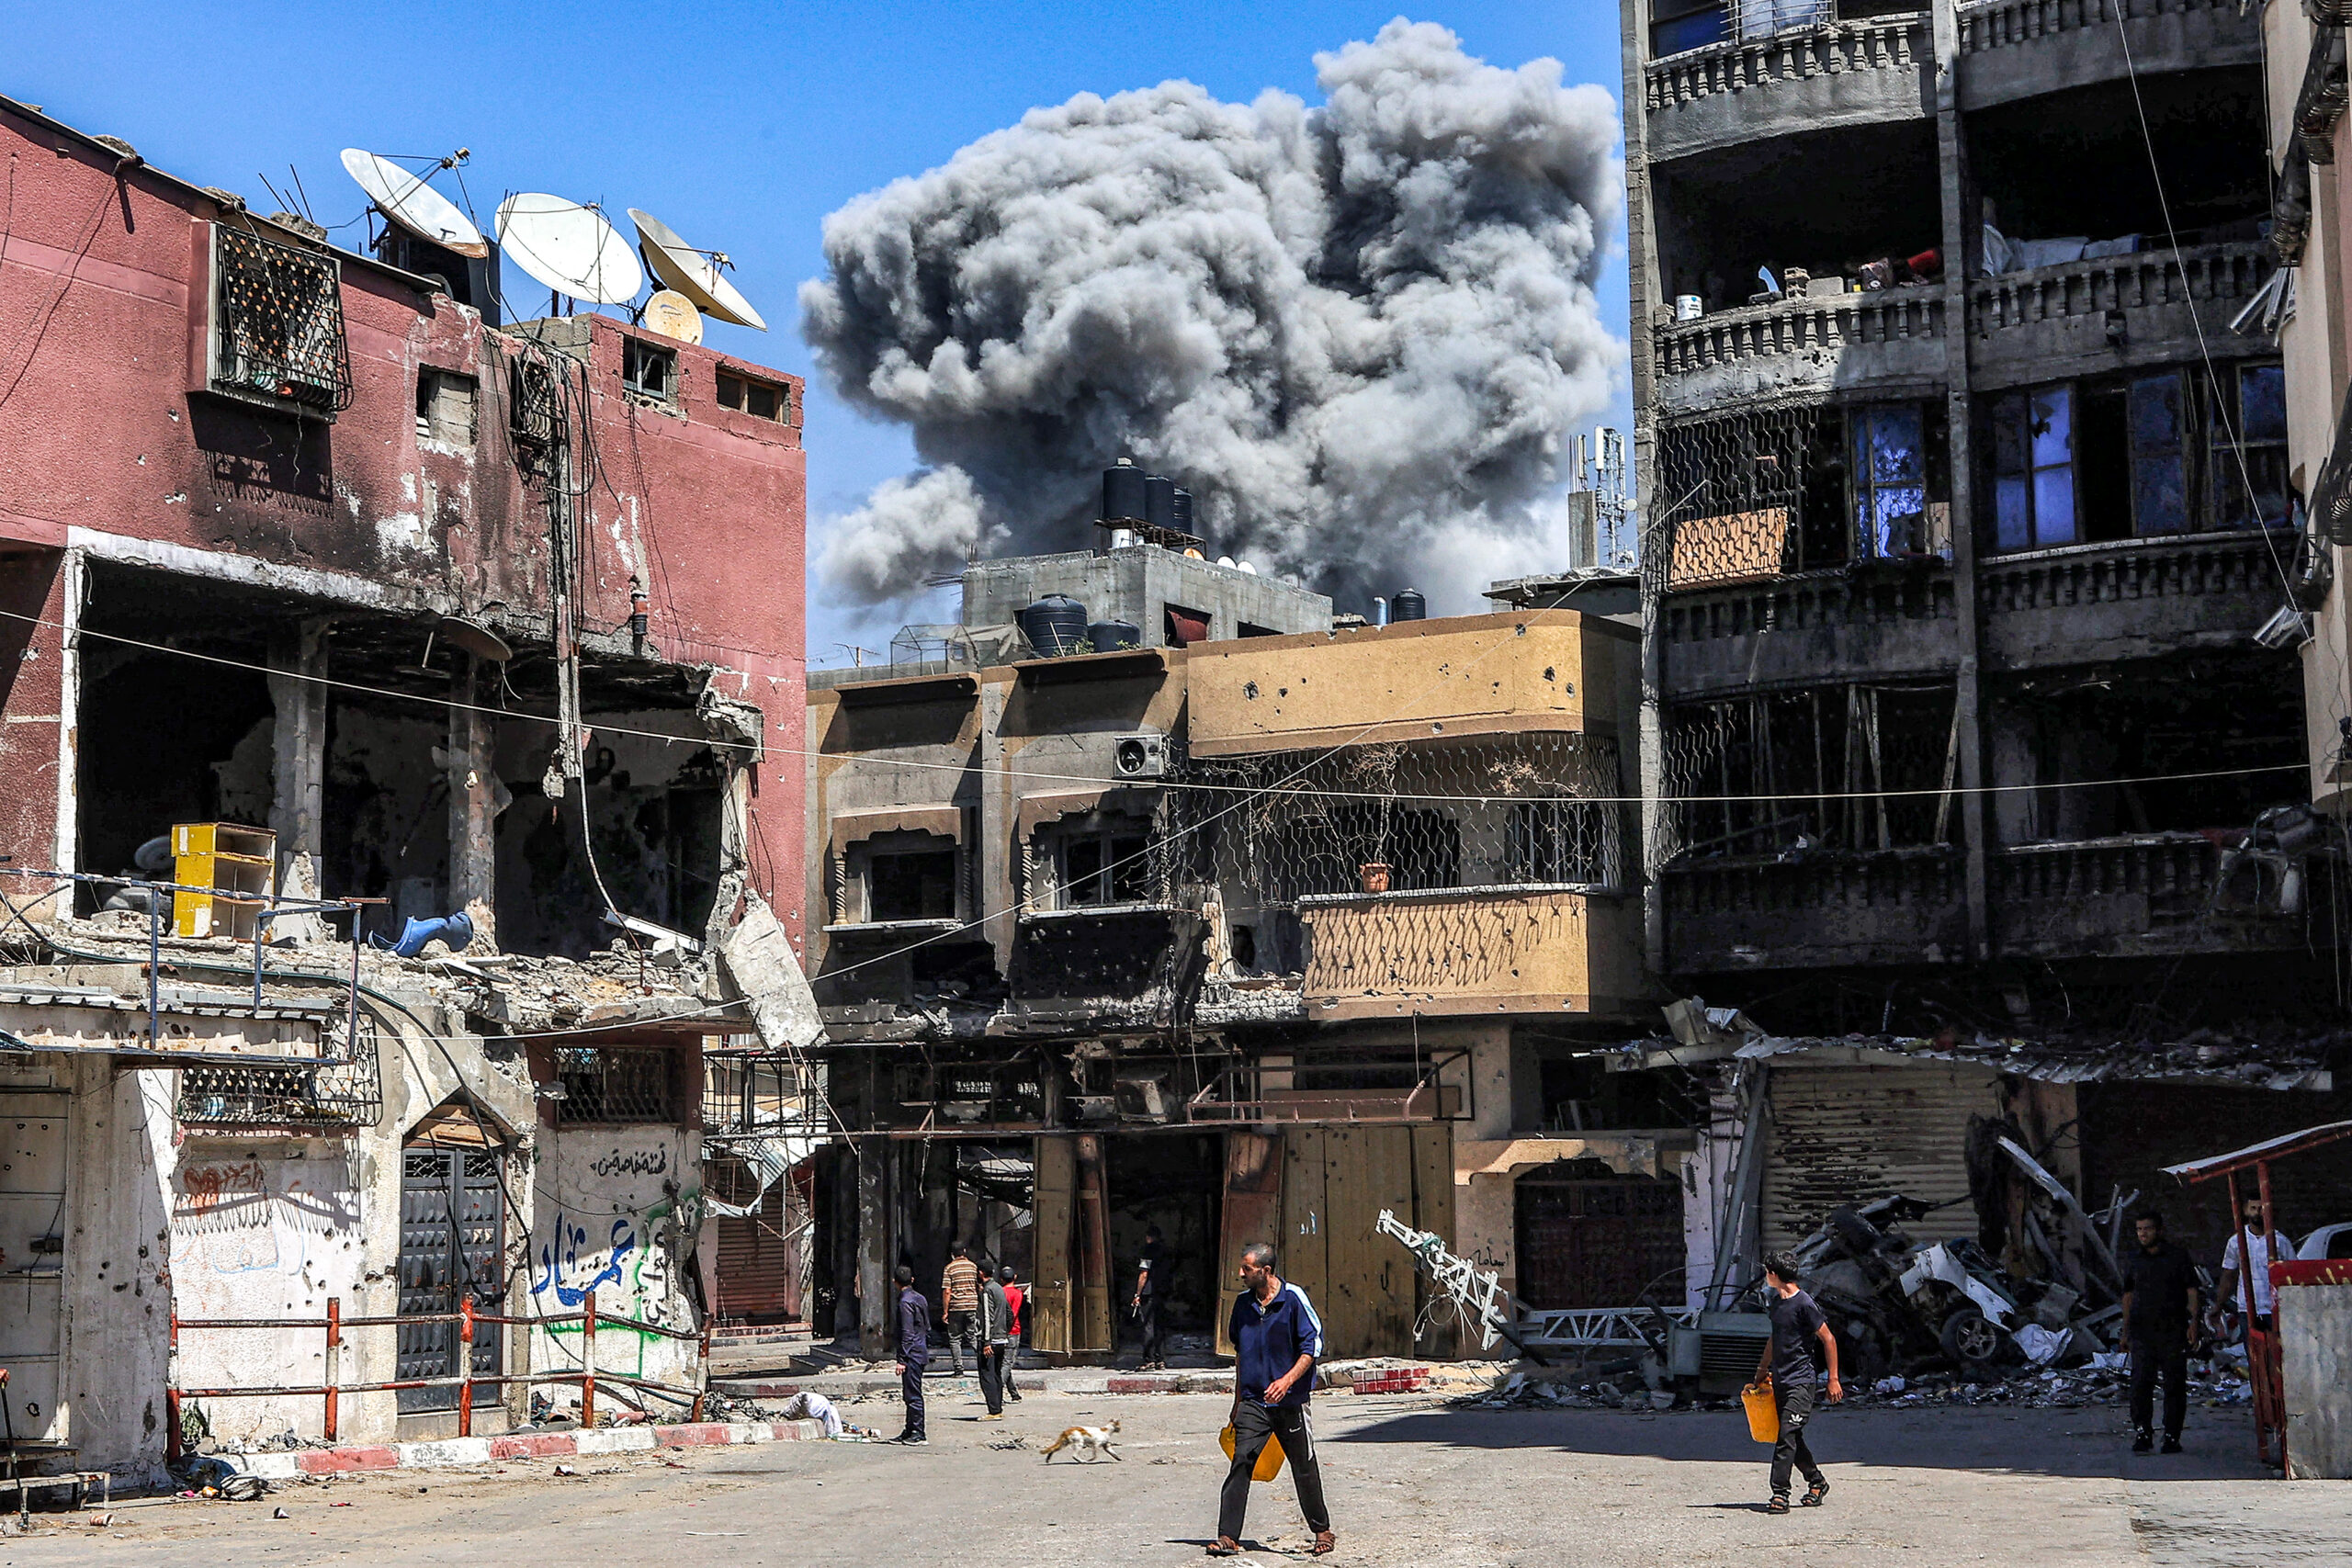 ActionAid denuncia l'invasione israeliana di Rafah in  violazione della sentenza della Corte de l'Aia